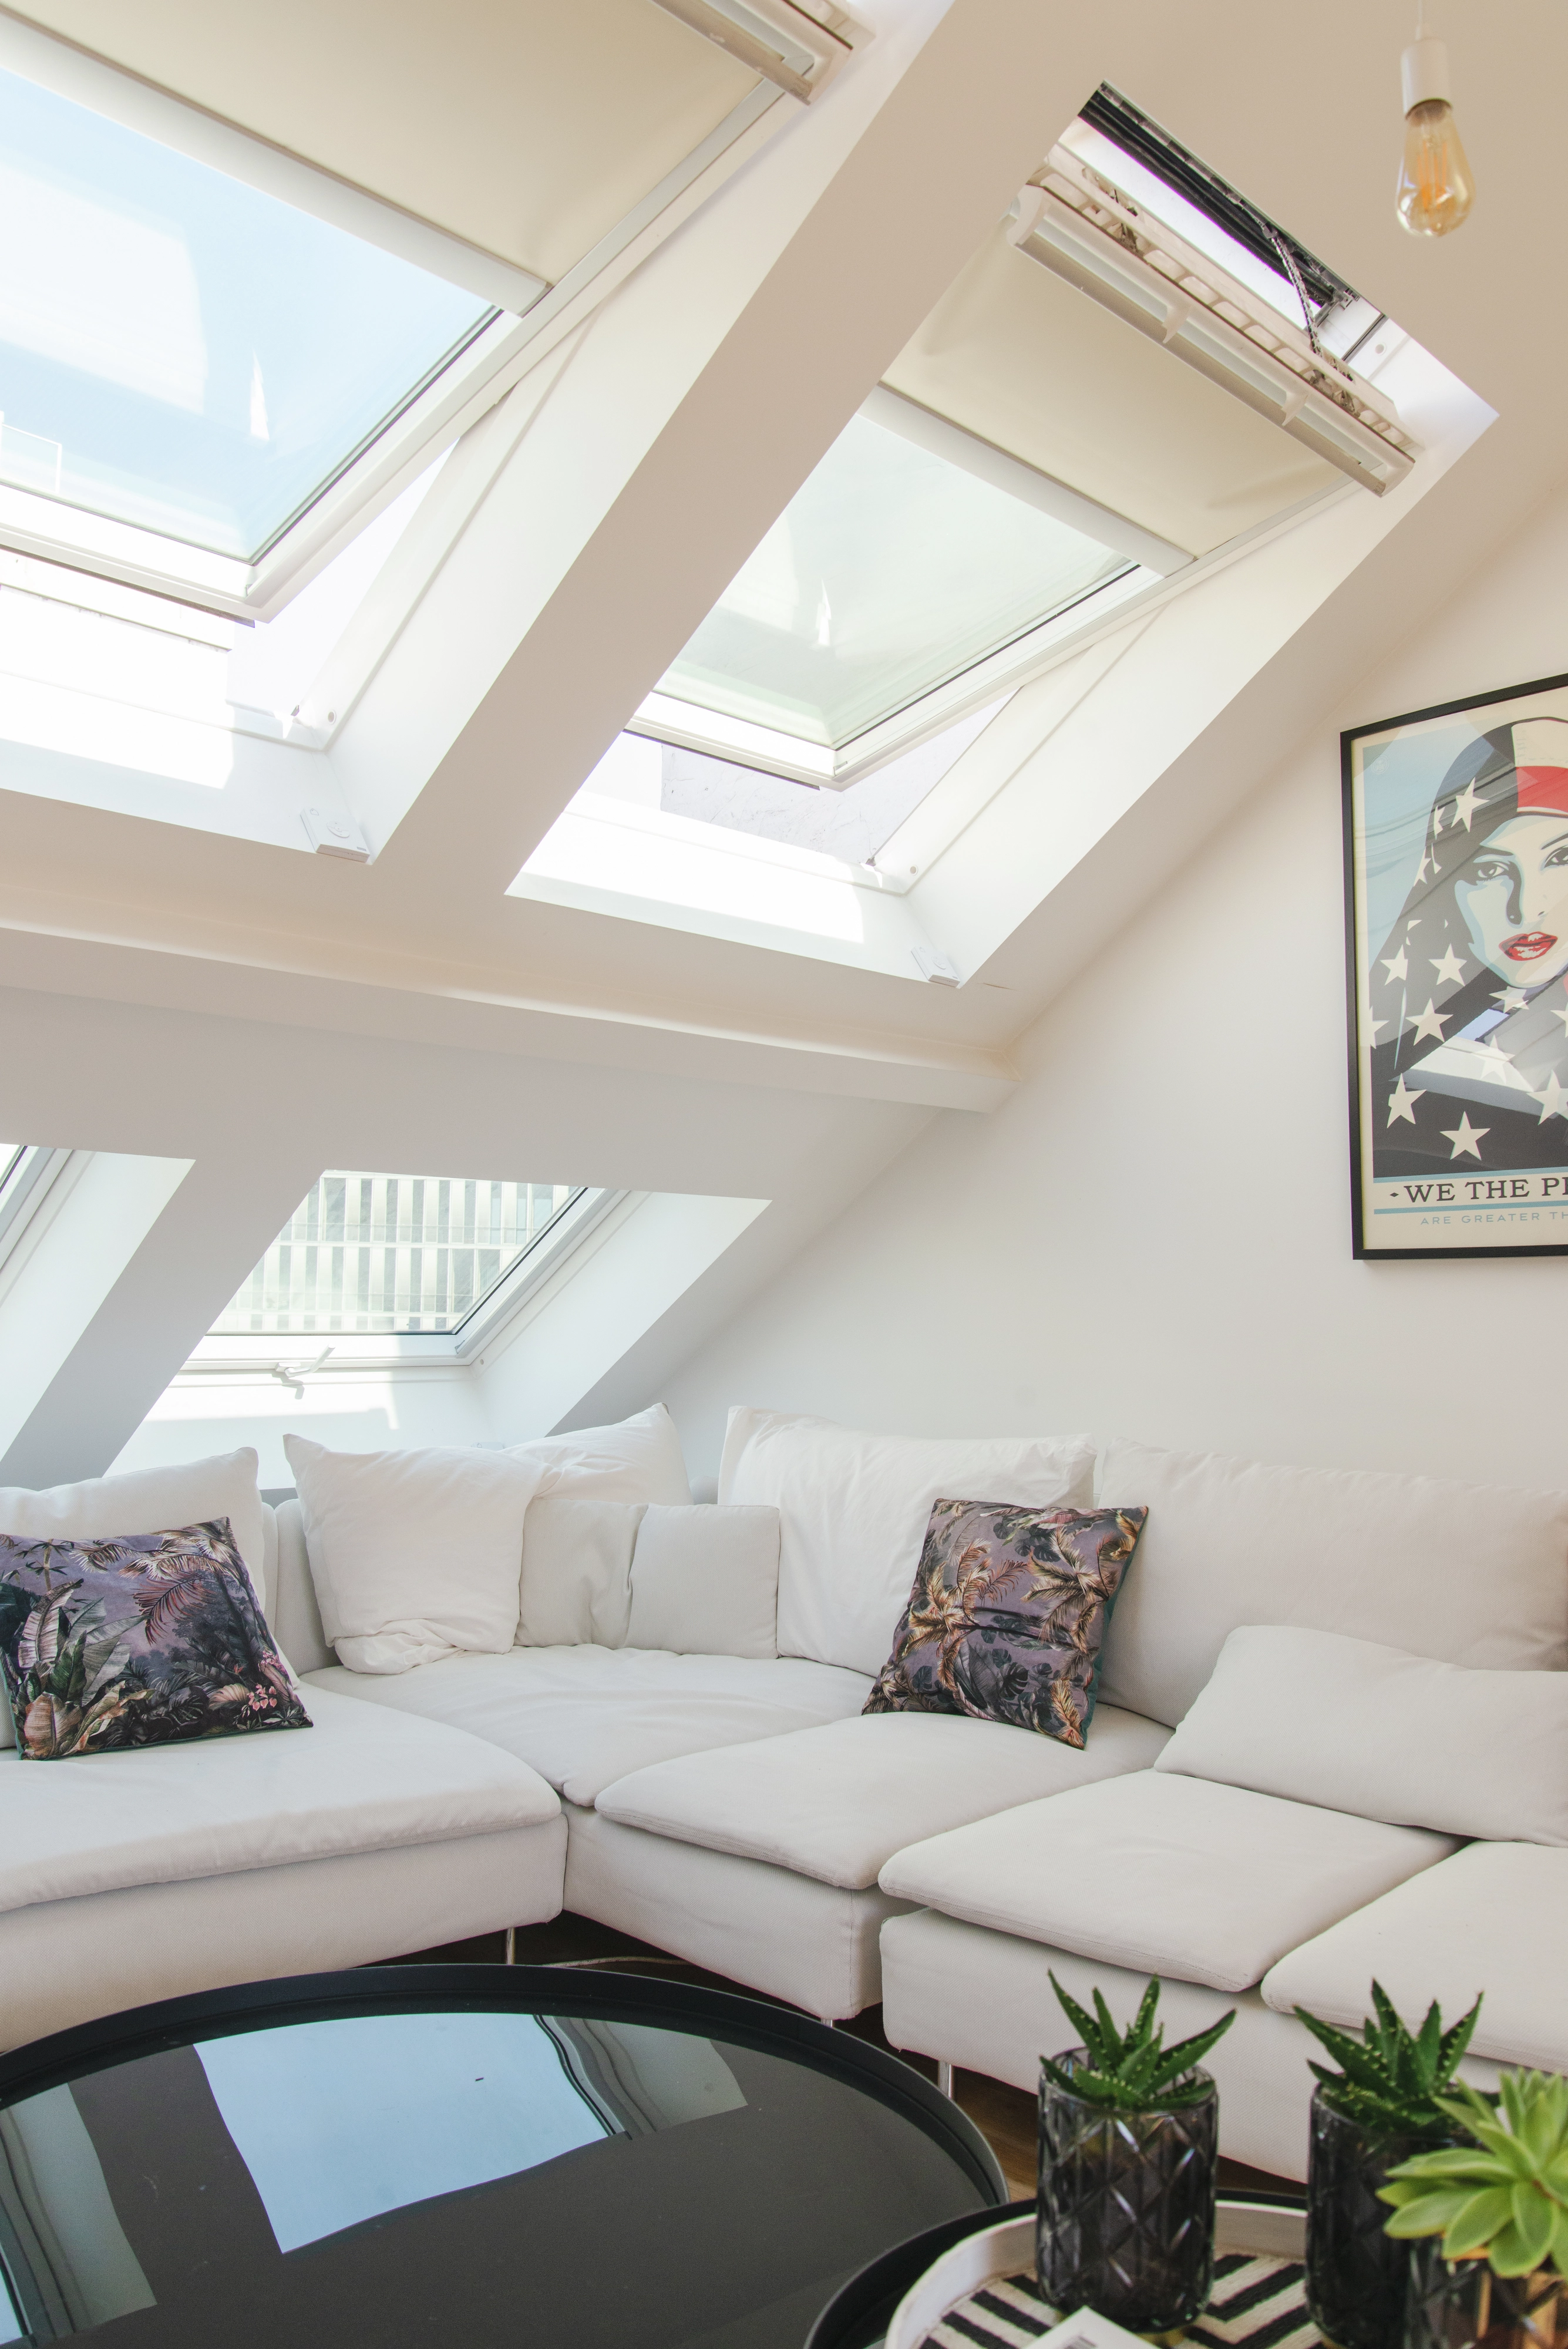 Salon de comble confortable avec fenêtres de toit VELUX, canapé modulable et plantes vertes.